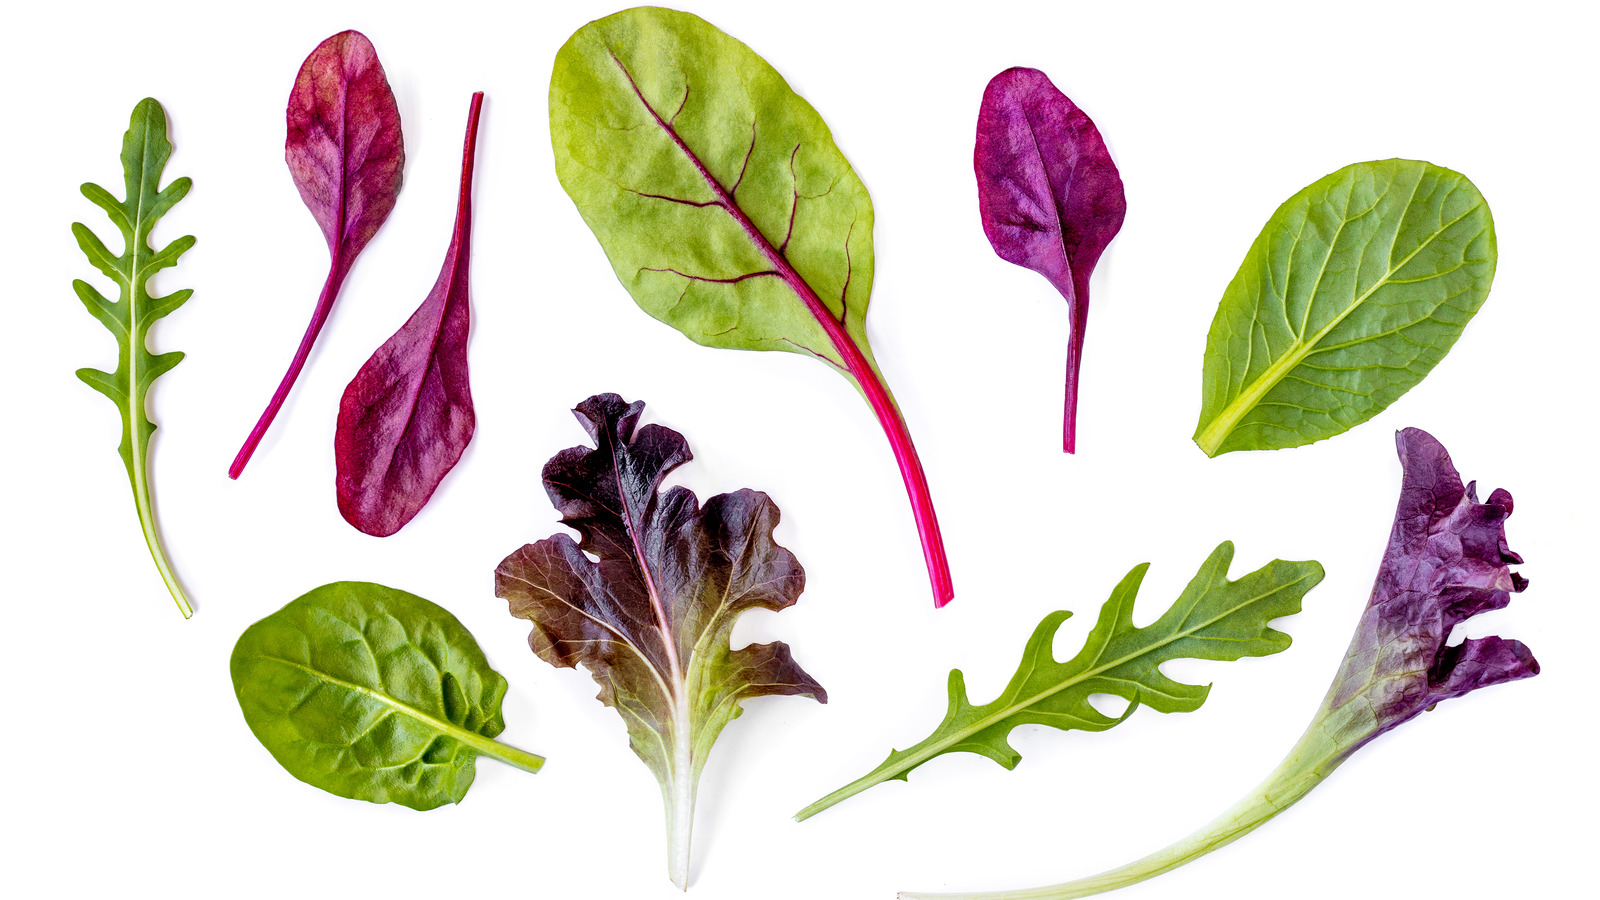 lettuce varieties